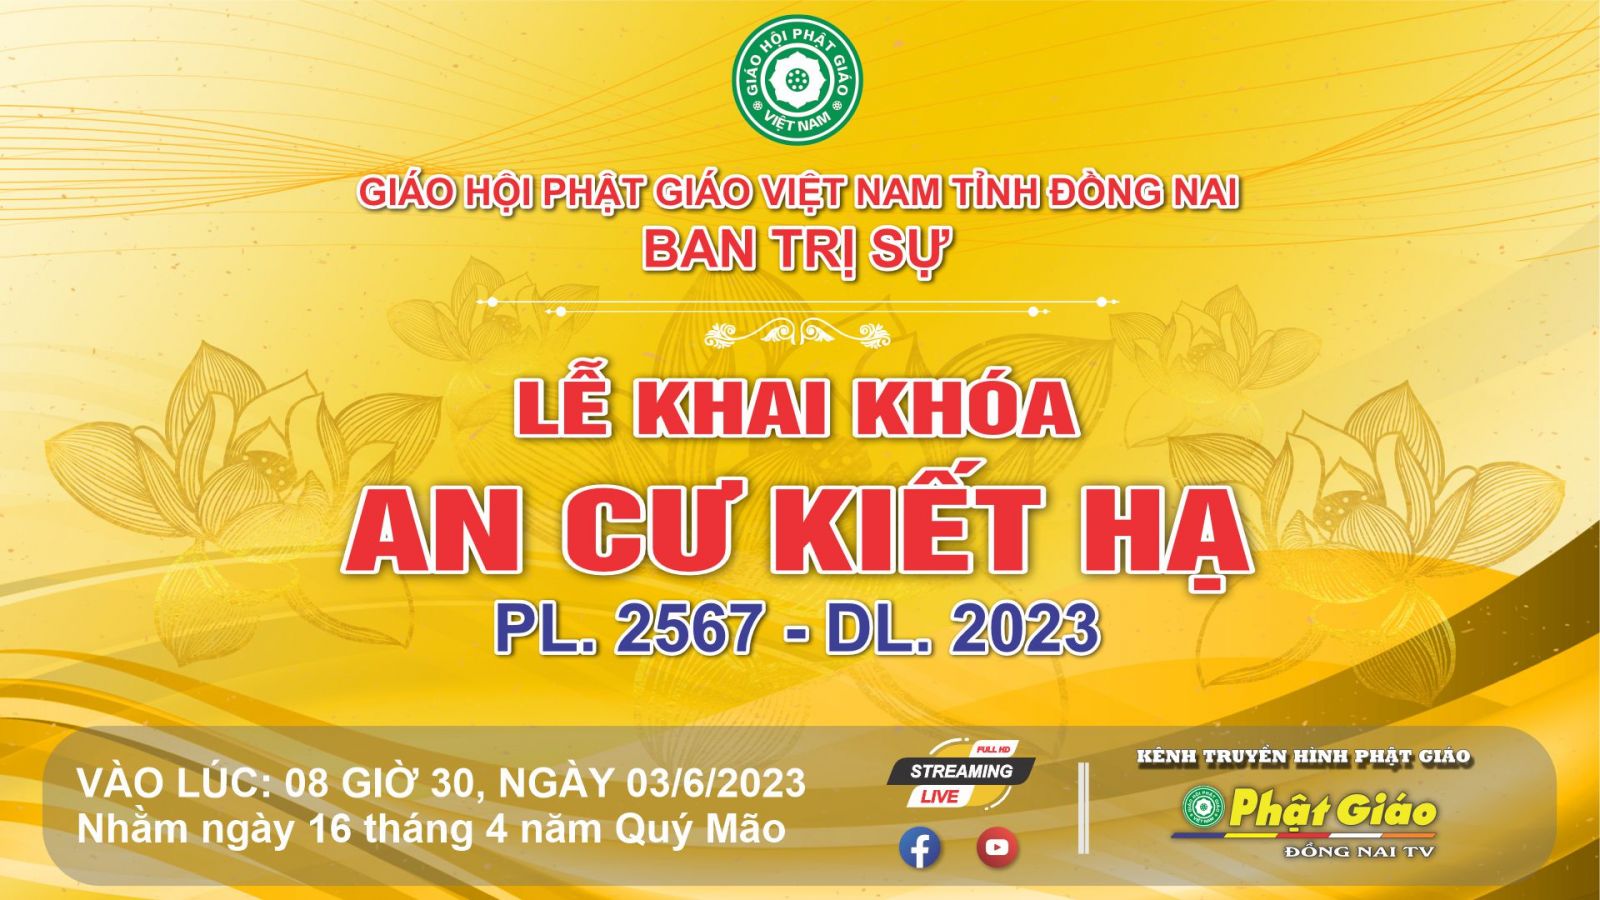 Trực tiếp: Ban Trị sự GHPGVN tỉnh Đồng Nai trang nghiêm tổ chức Lễ Khai Khóa - An Cư Kiết Hạ PL. 2567 - DL. 2023